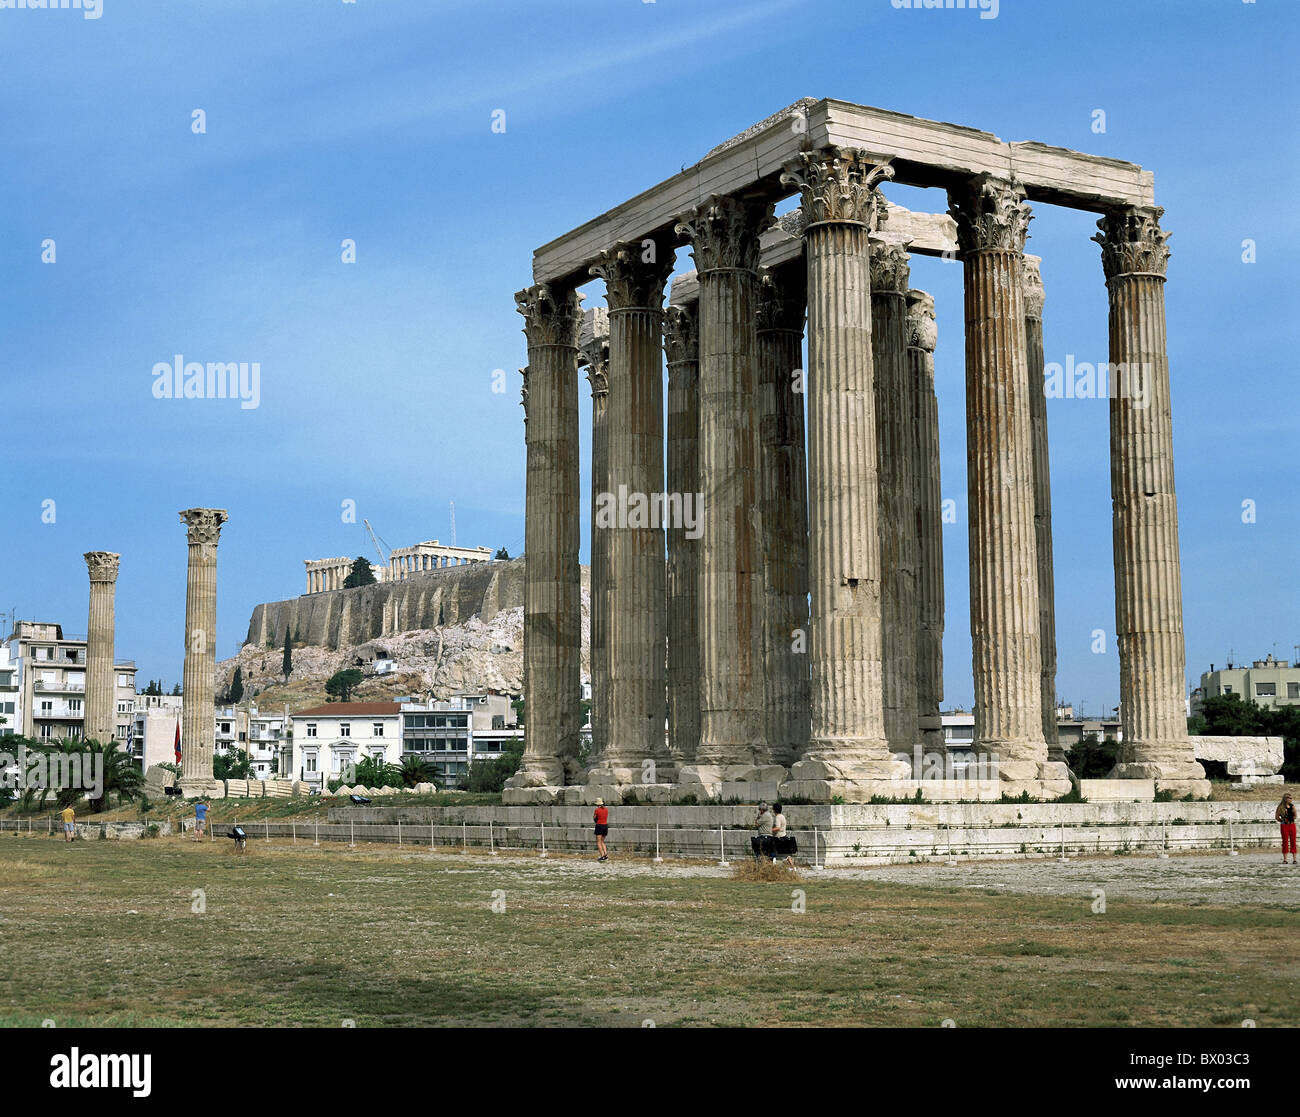 Ancien monde antique de l'acropole d'Athènes Grèce antiquité ruines de temples historiques Olympieion colonnes Banque D'Images